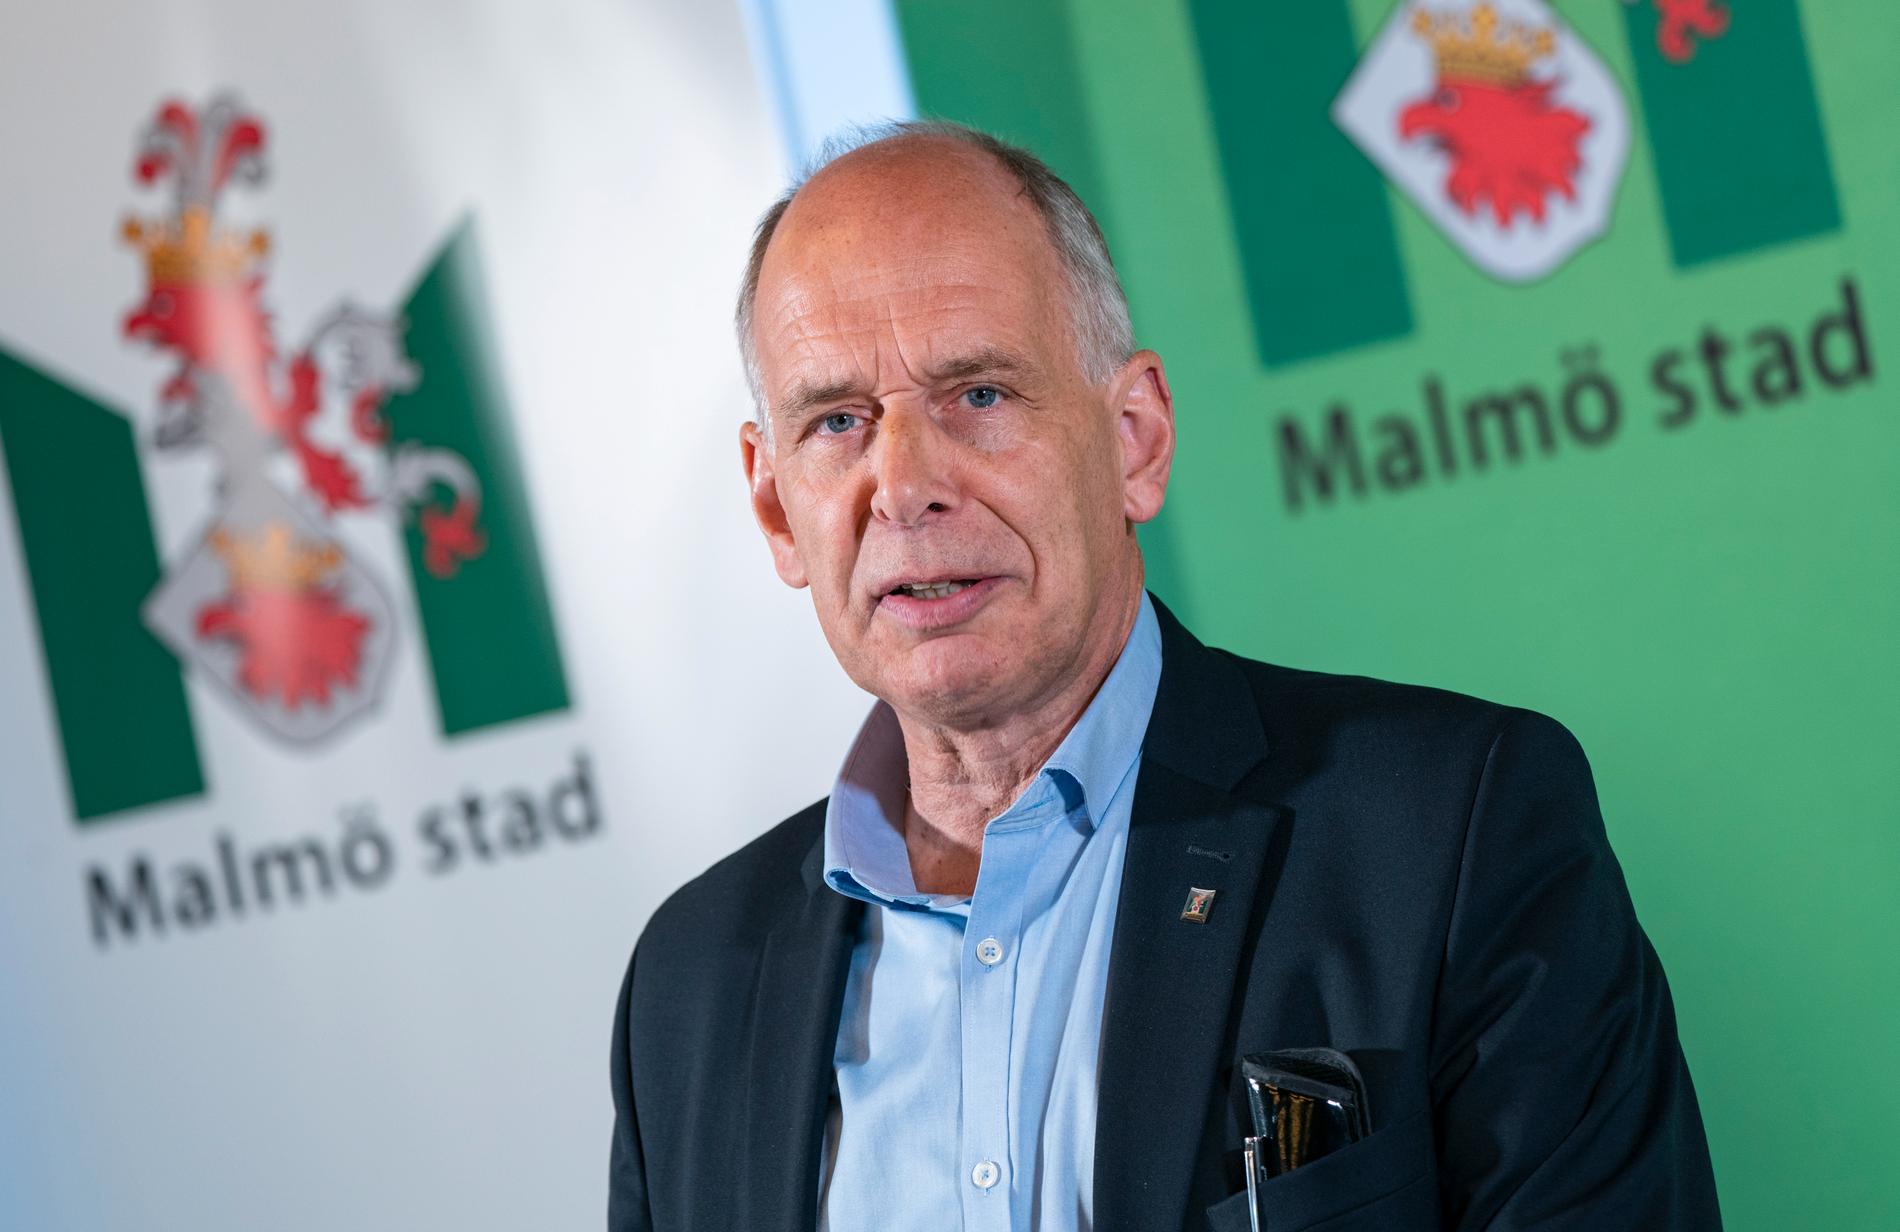 Lars Rehnberg, gymnasie- och vuxenutbildningsdirektör vid Malmö stad.